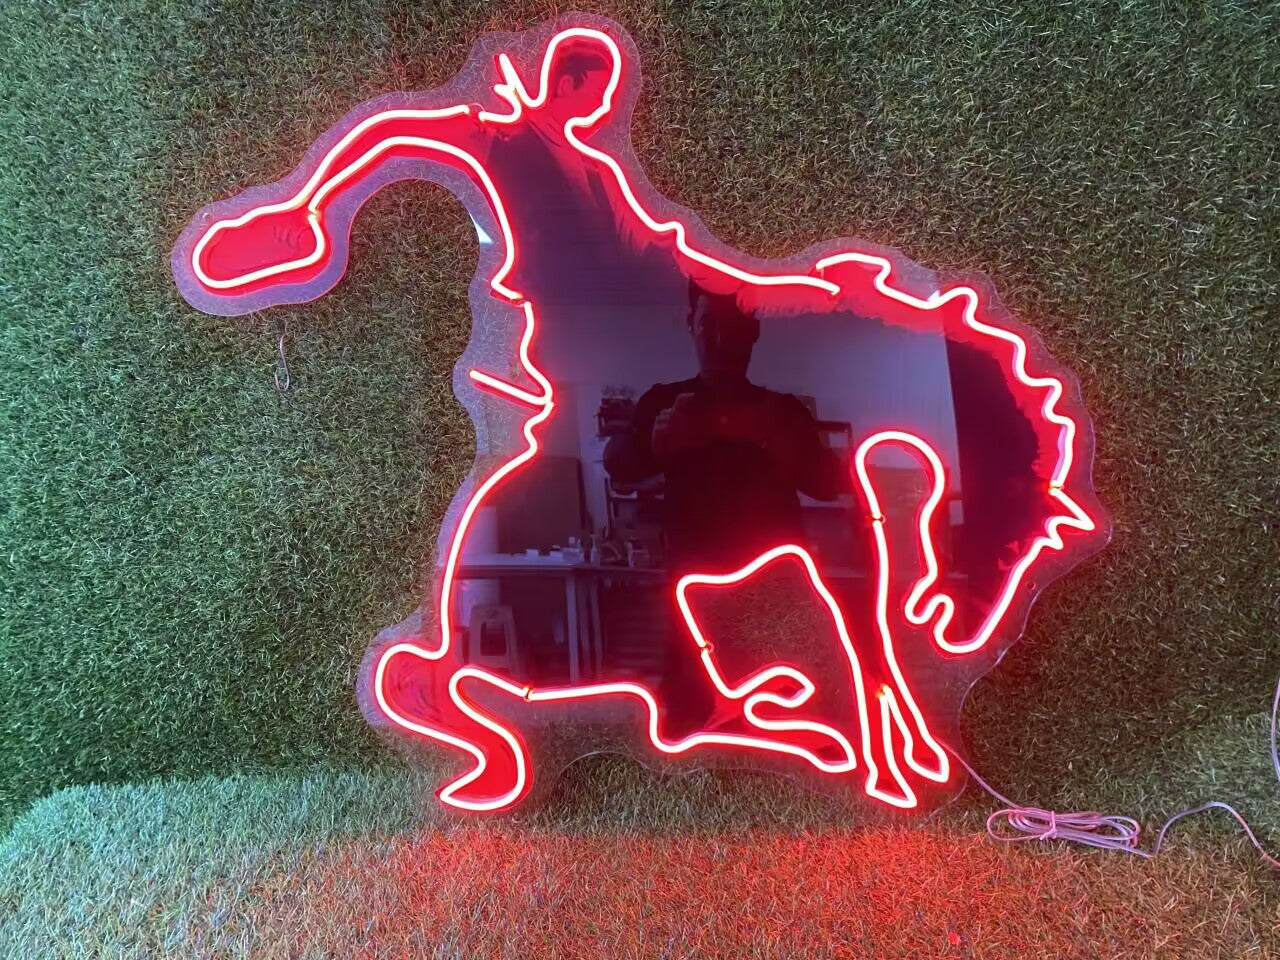 Cowboy Riding Horse Neon Sign